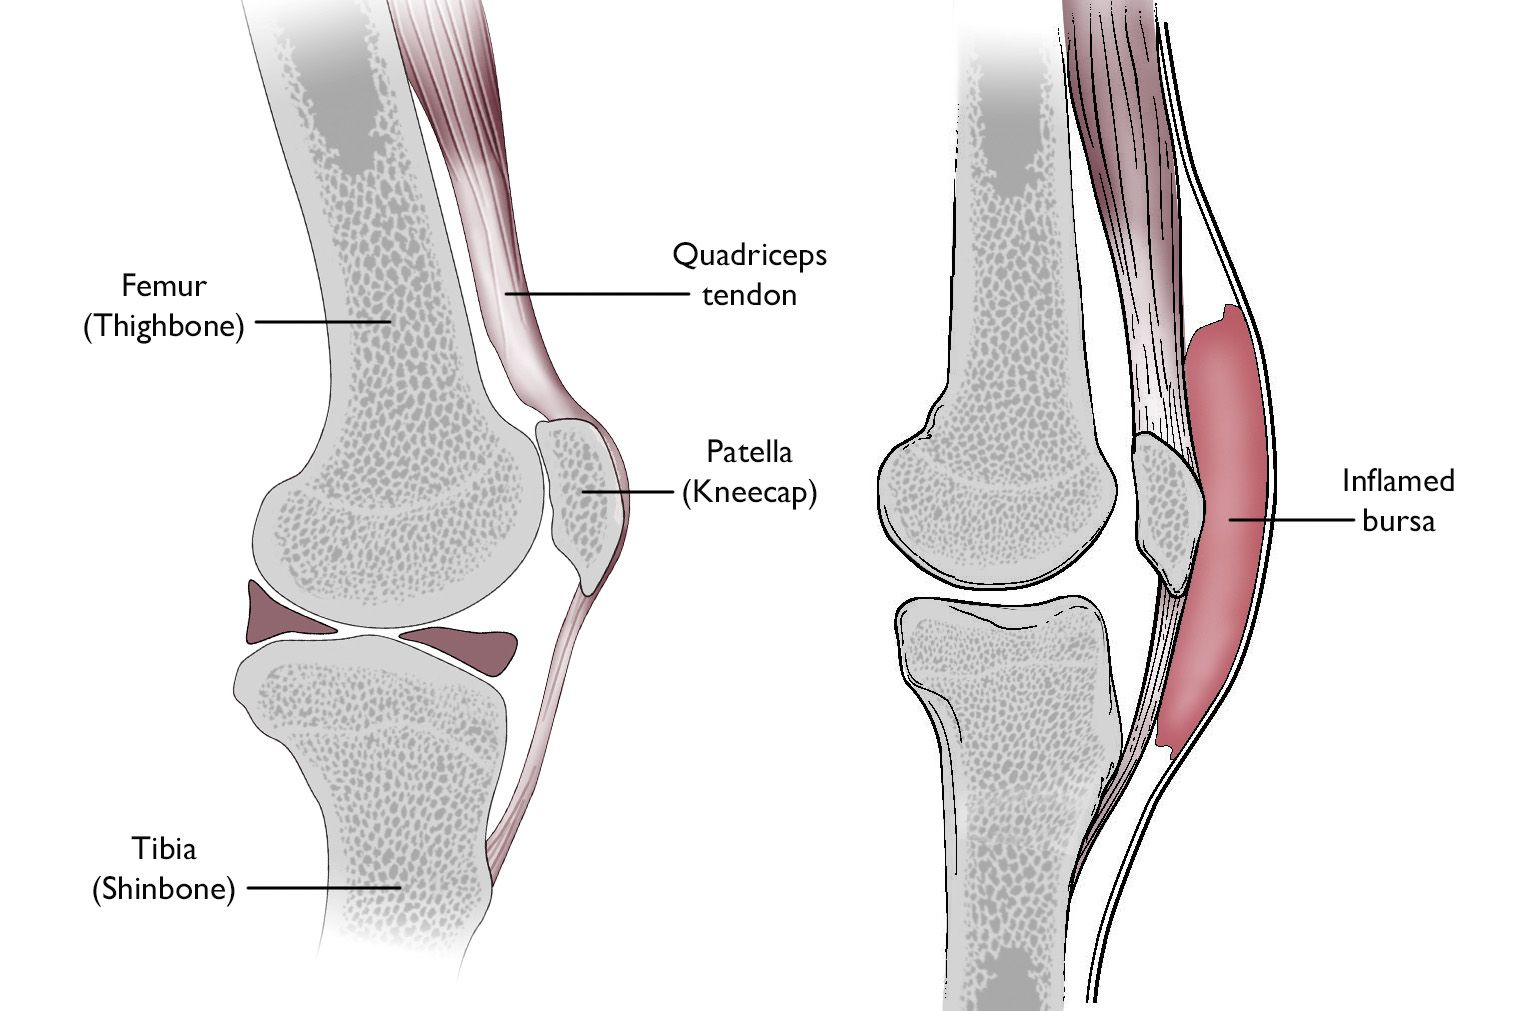 Normal knee anatomy including the bursa involved in prepatellar bursitis